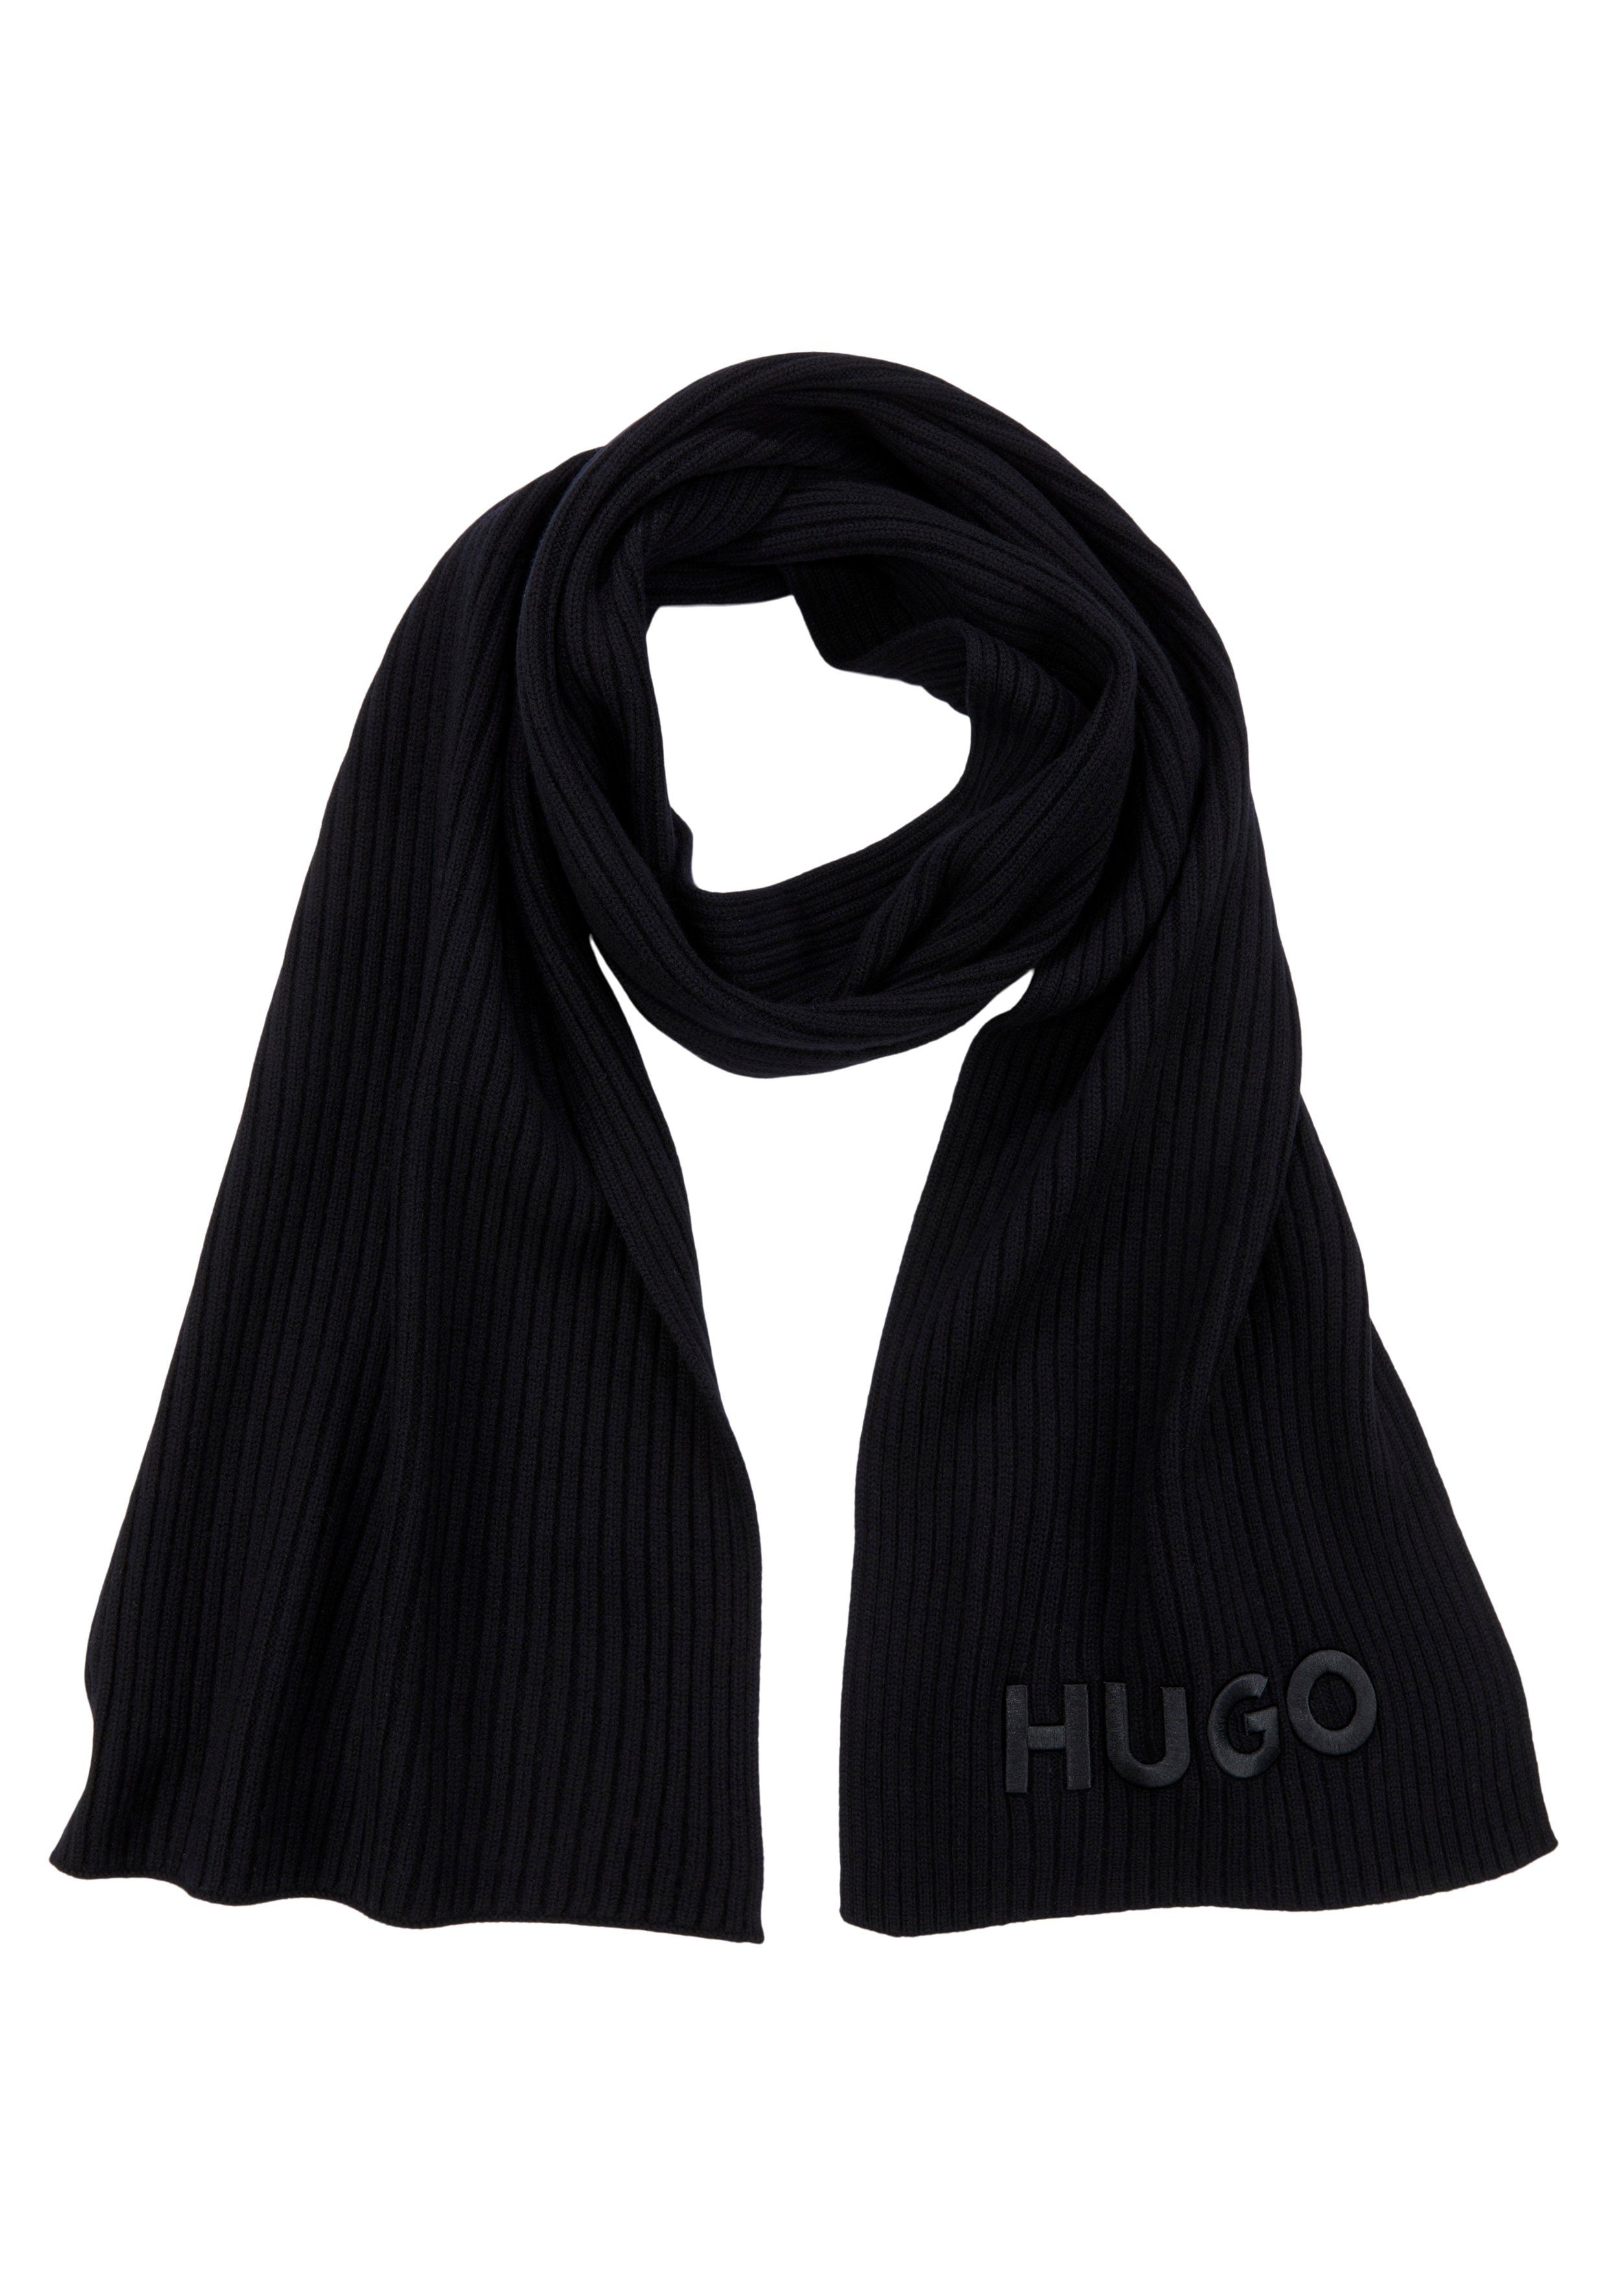 HUGO-Logoschriftzug mit HUGO Zunio-1, Black Schal